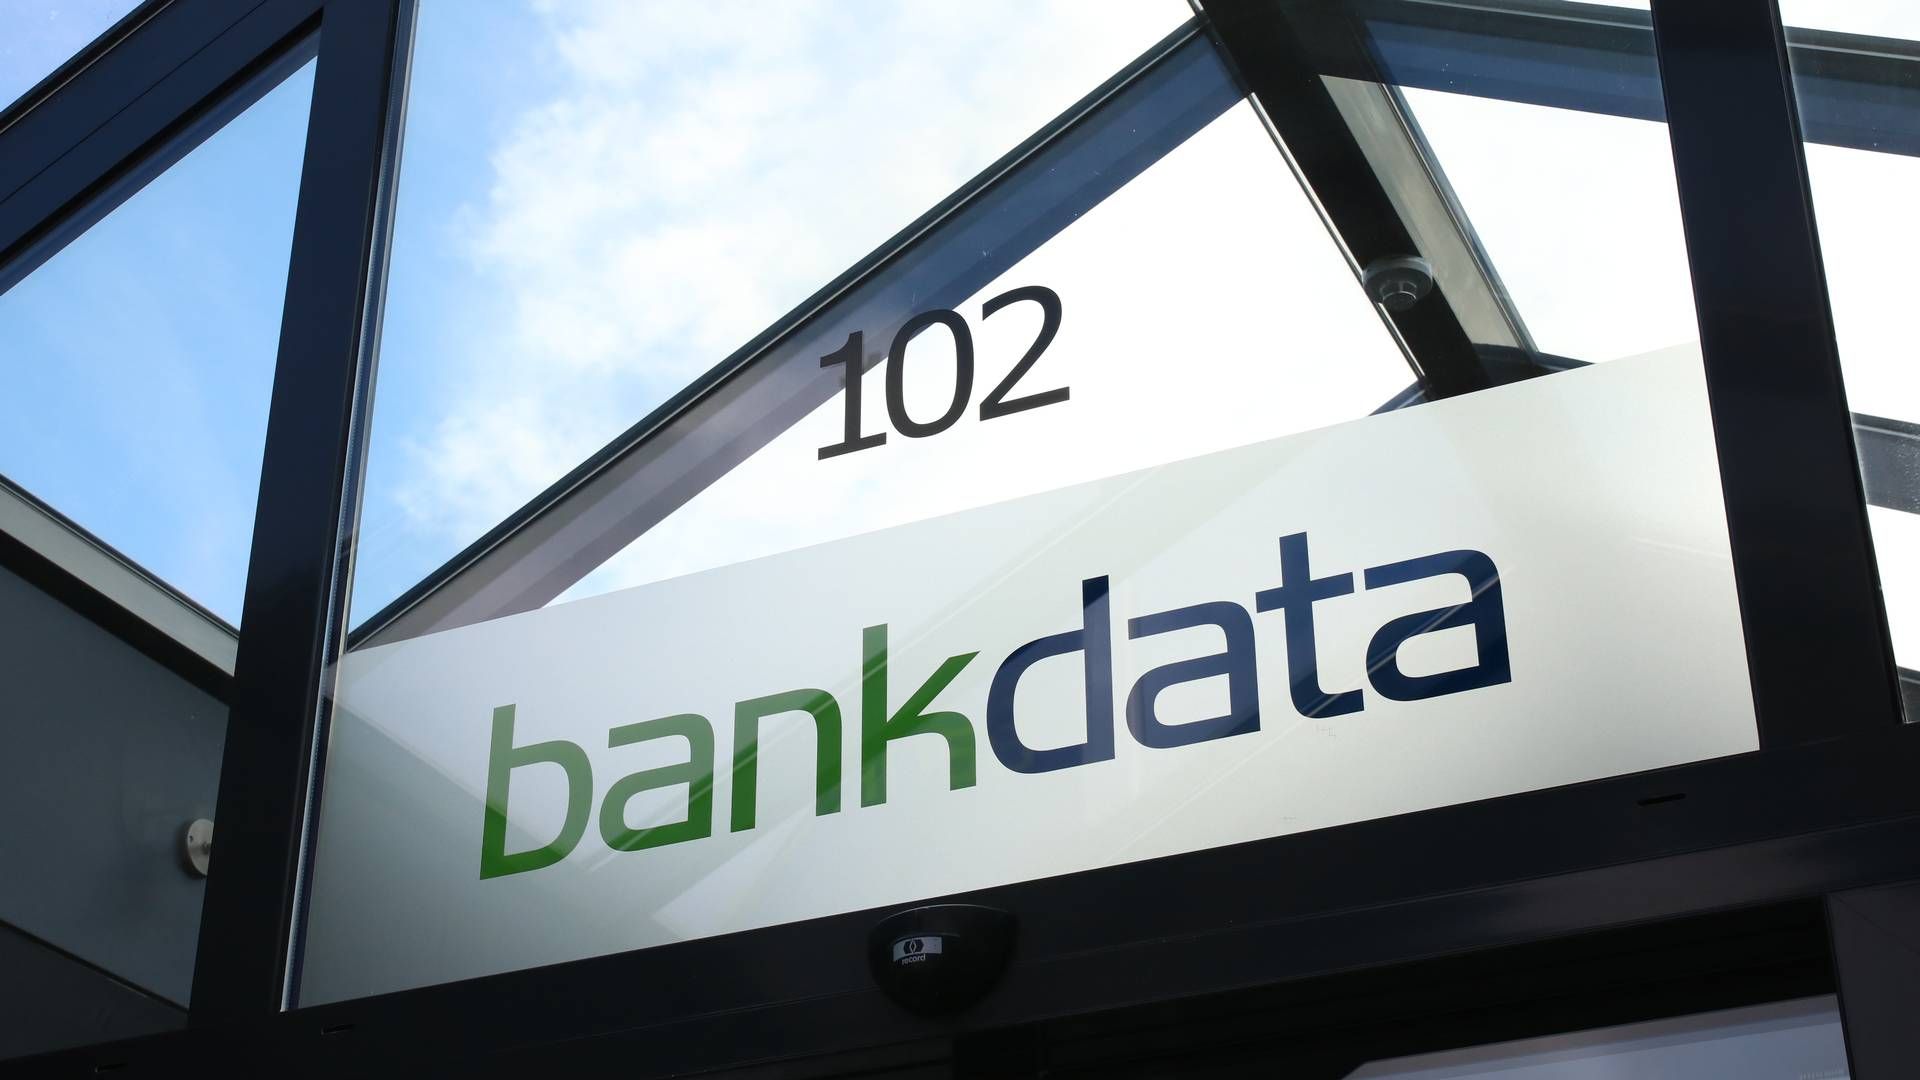 Bankdata er ejet af otte danske pengeinstitutter. | Foto: bankdata